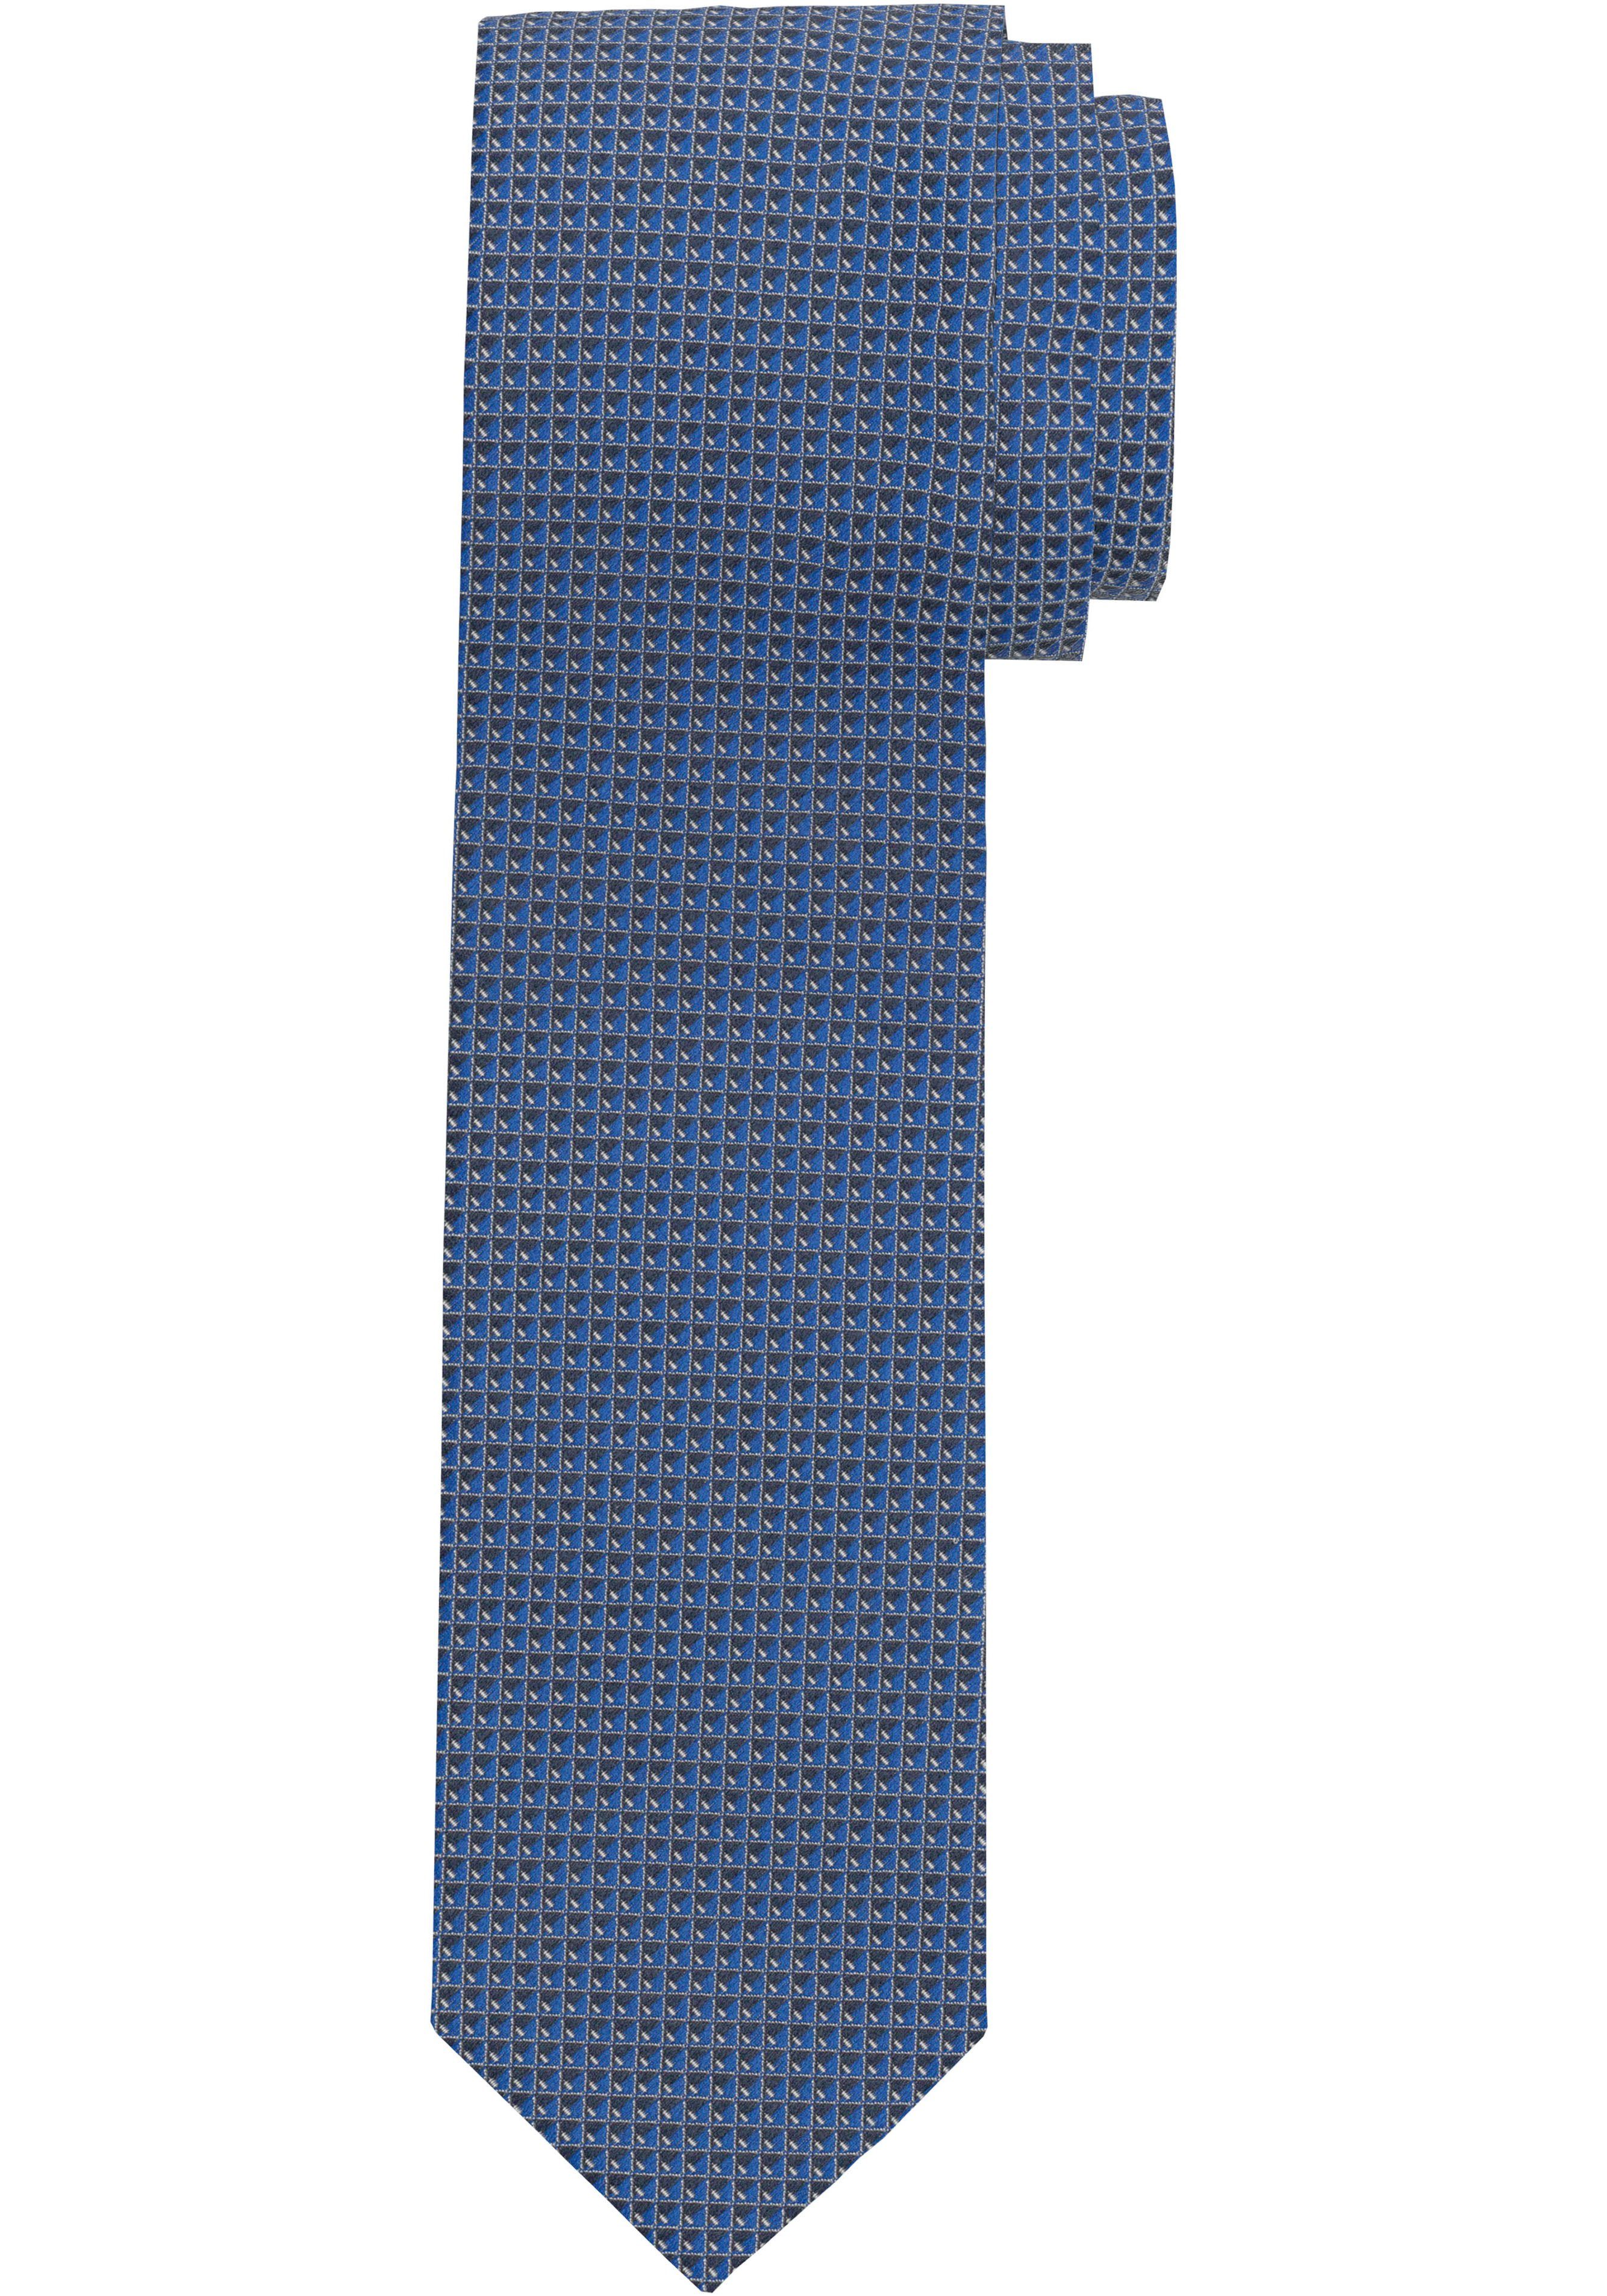 OLYMP Krawatte Strukturierte Krawatte, gegen fleckabweisende und Schmutz Wirksamer Veredelung Schutz Flecken durch